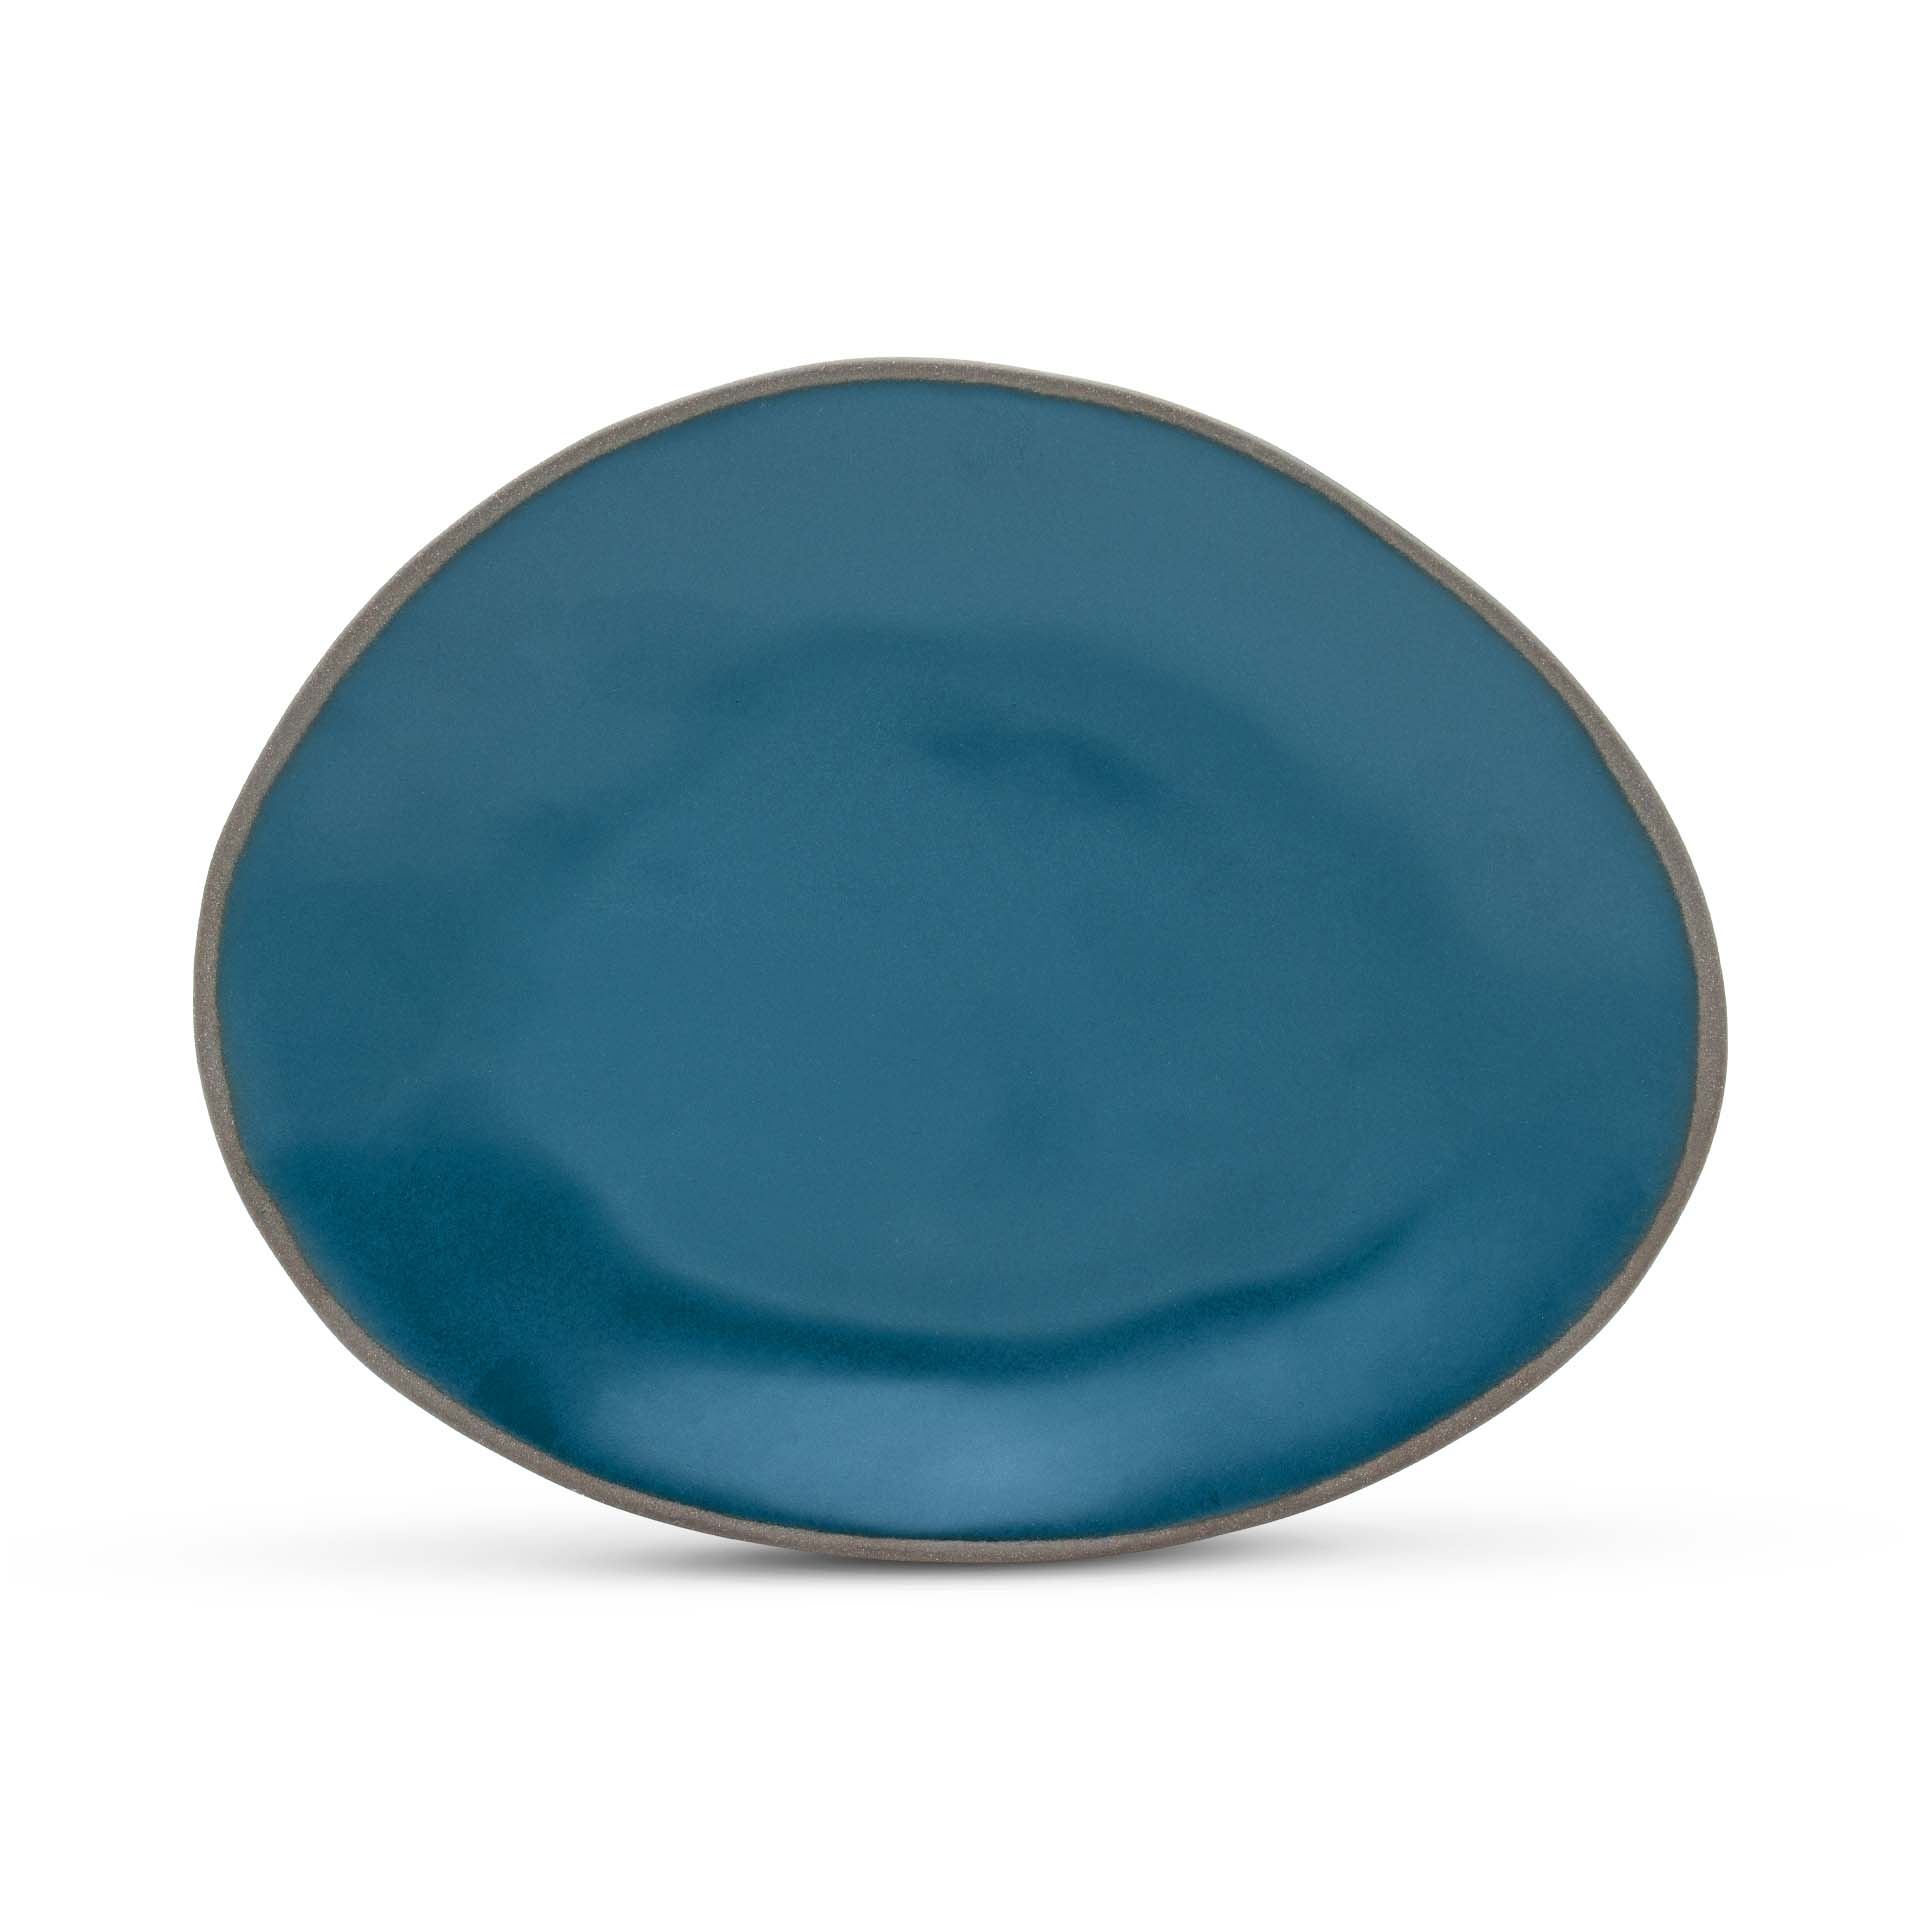 Stacked Organic Ovale Platte, Farbe Dunkelblau Deep Sea